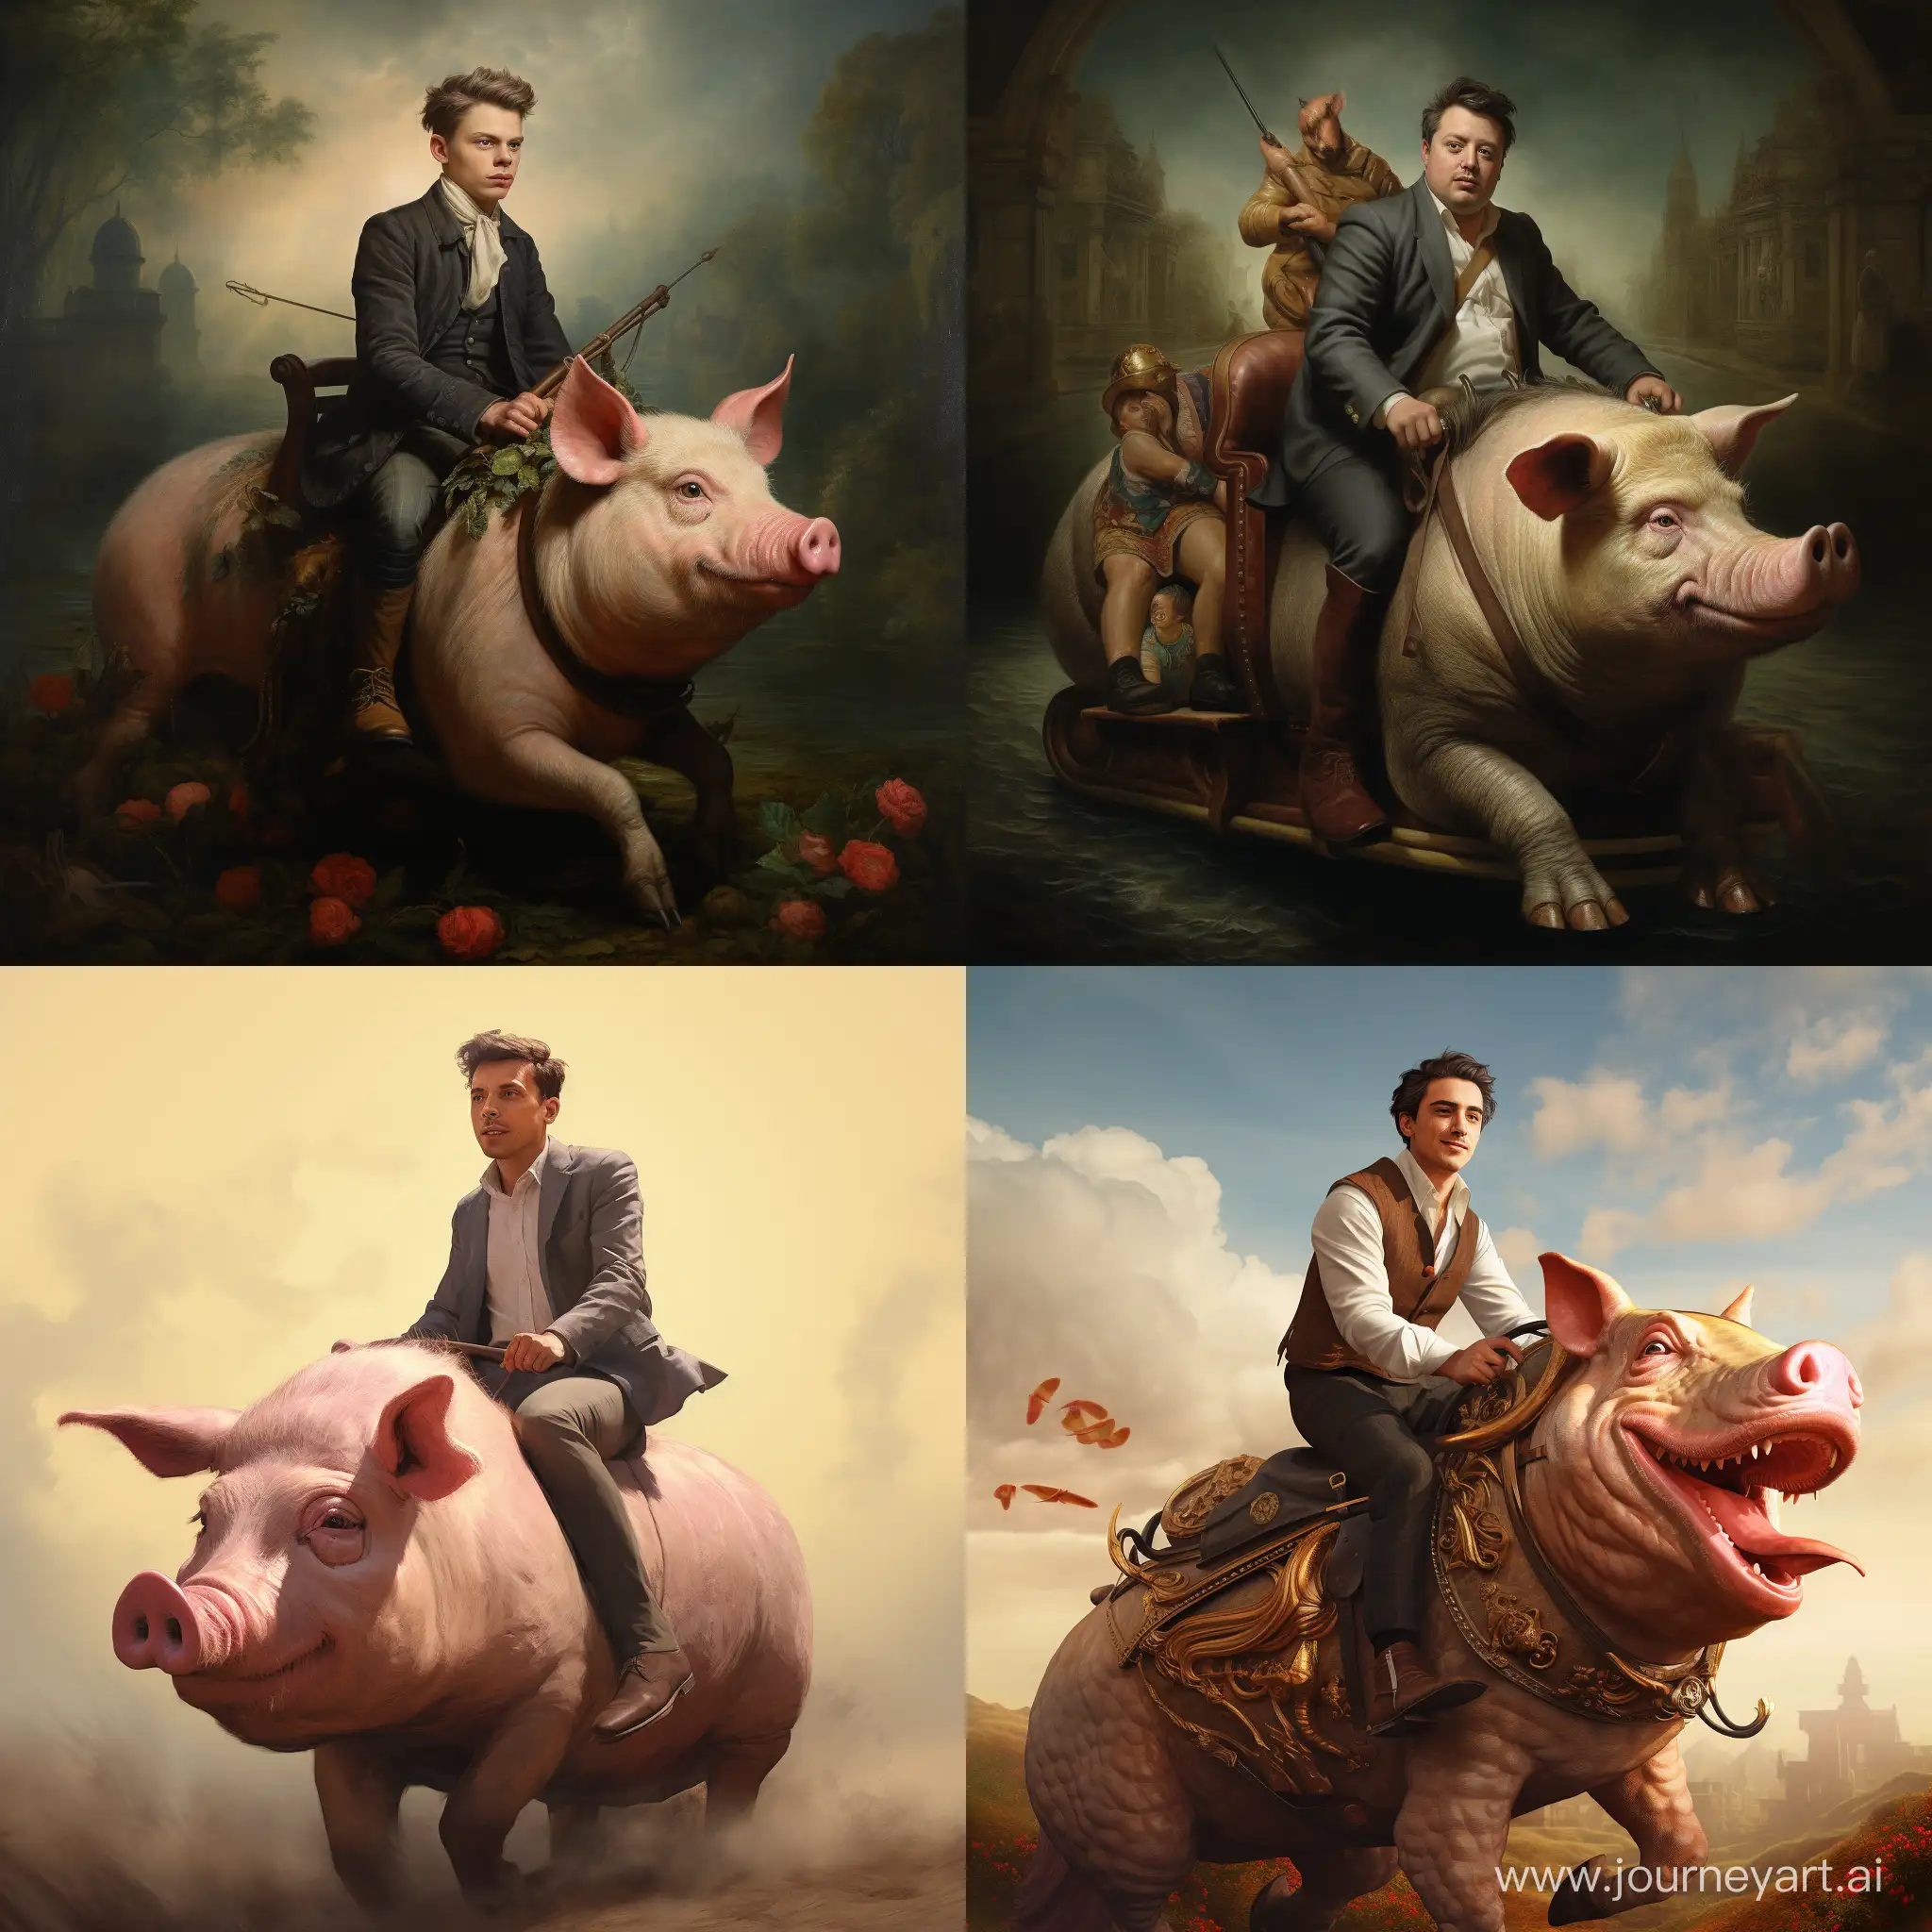 A man riding a pig